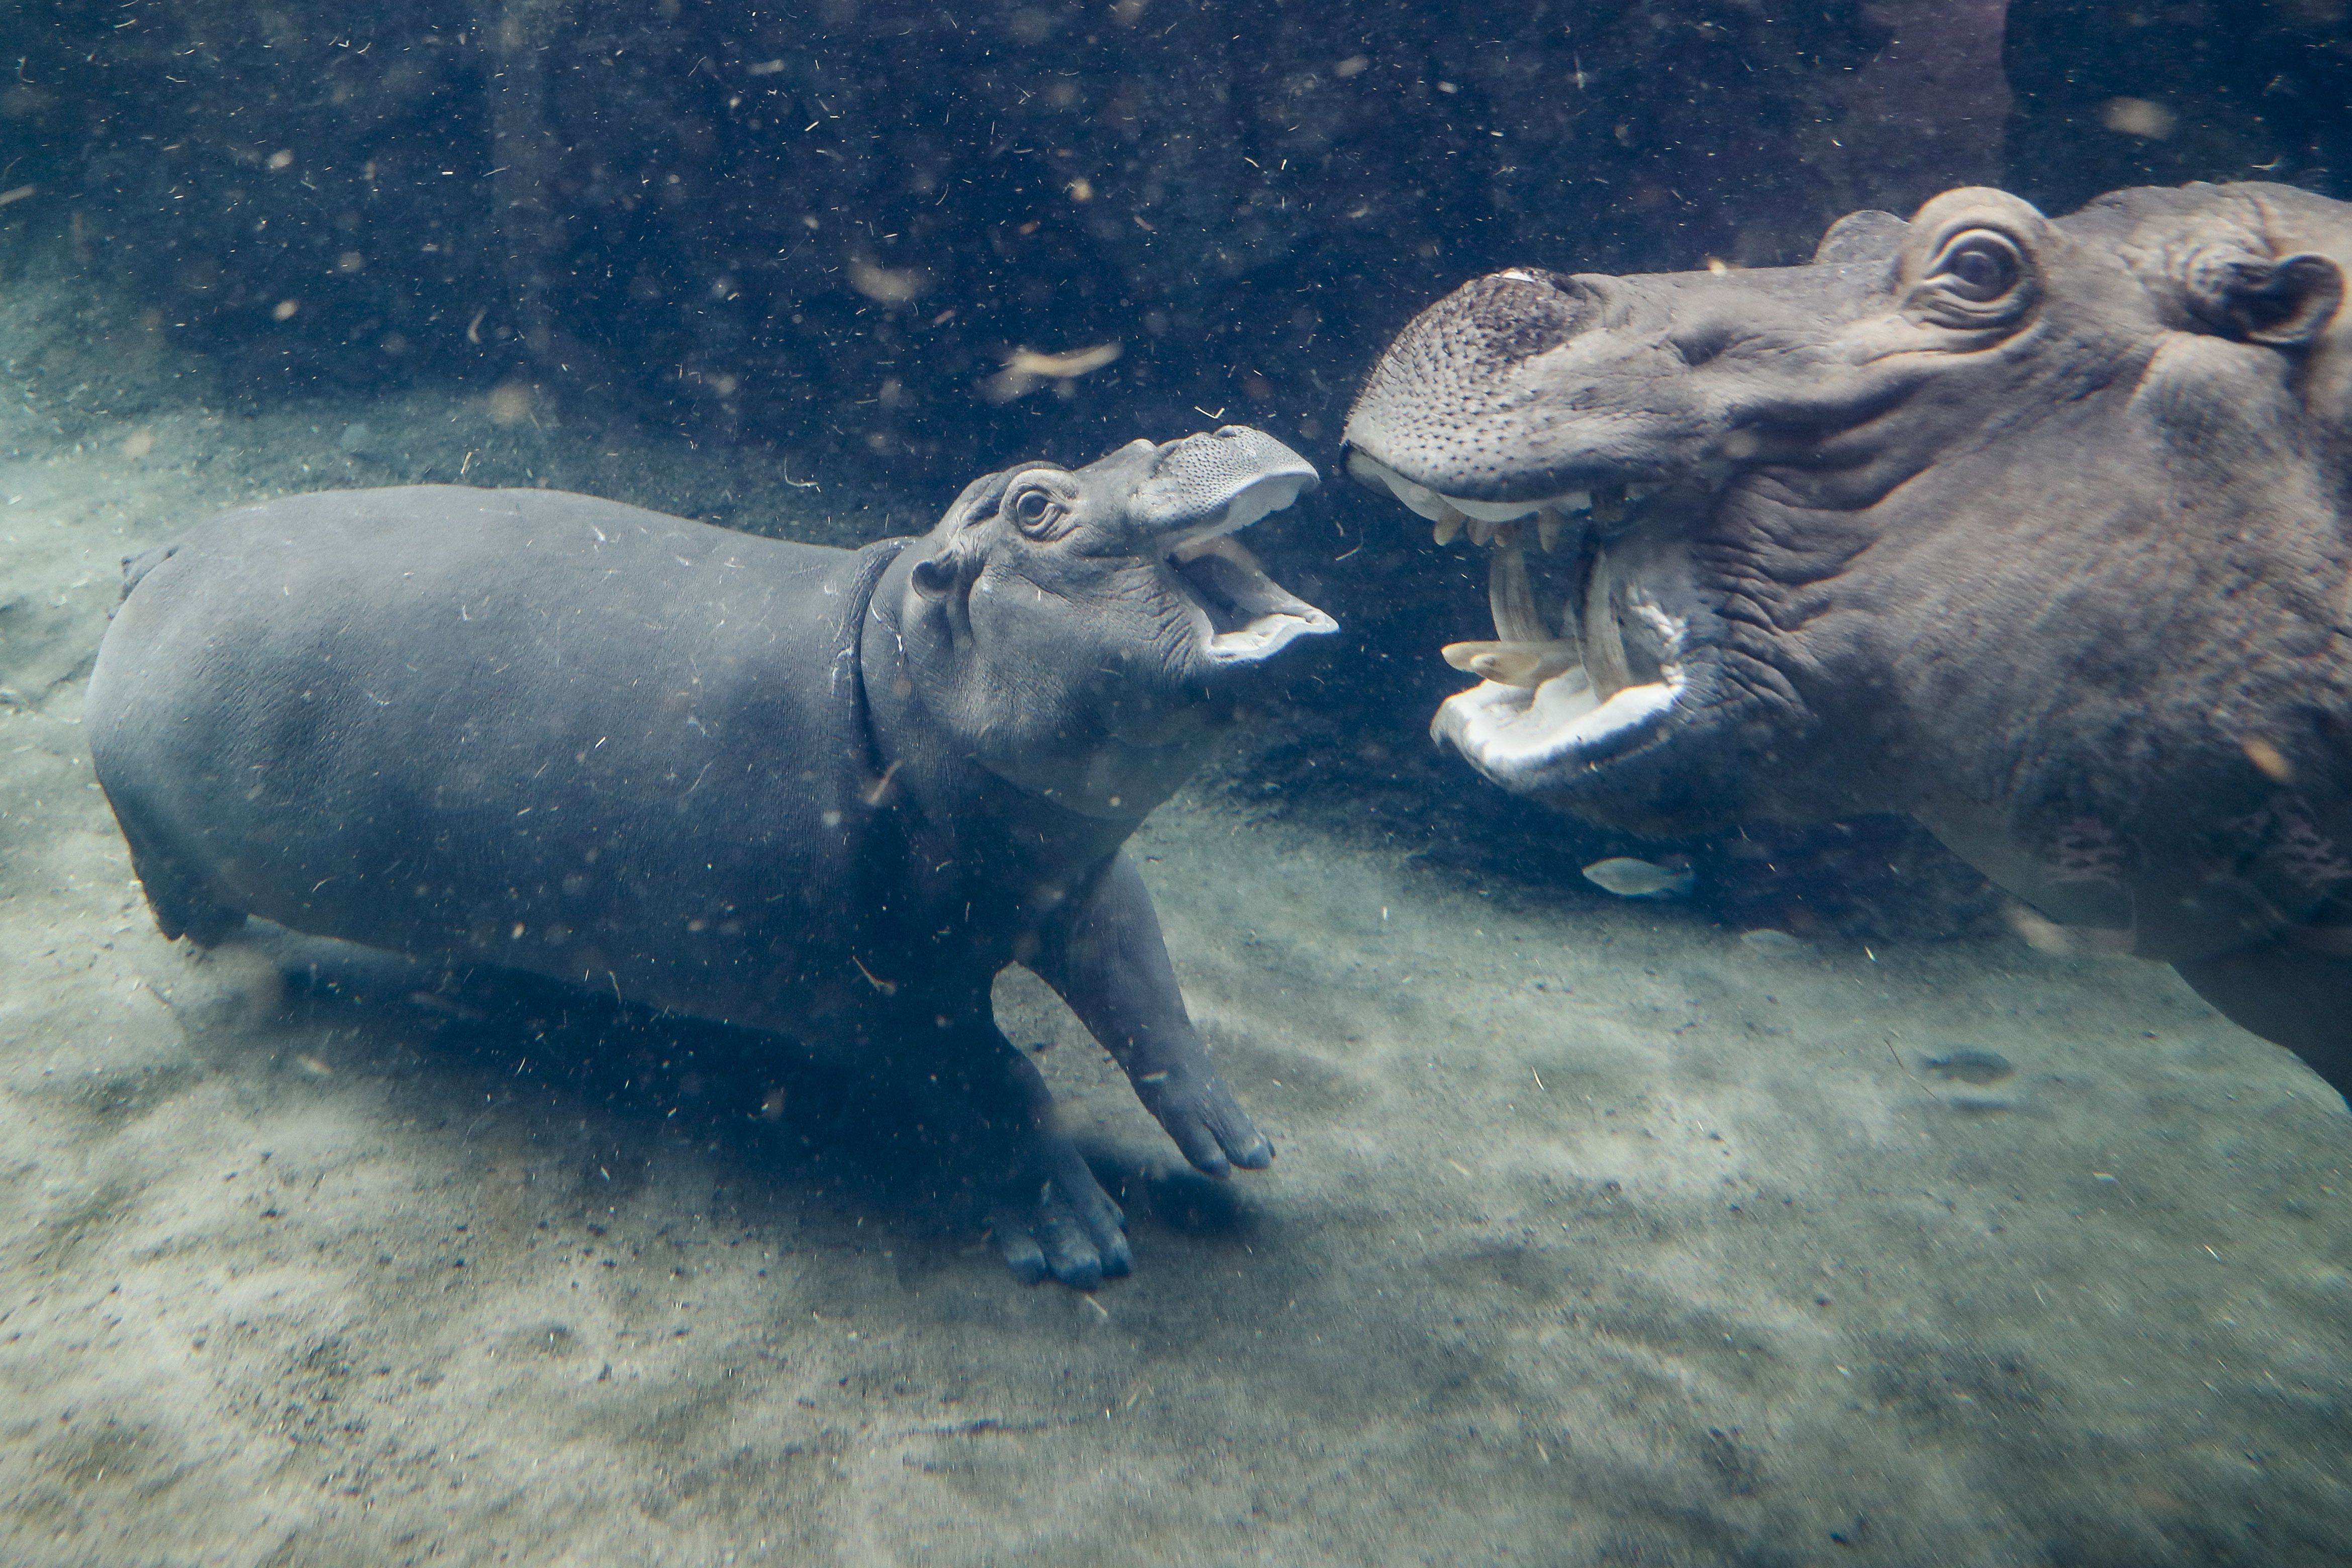 Zoo Hippo Fiona, Cincinnati, USA - 02 Nov 2017